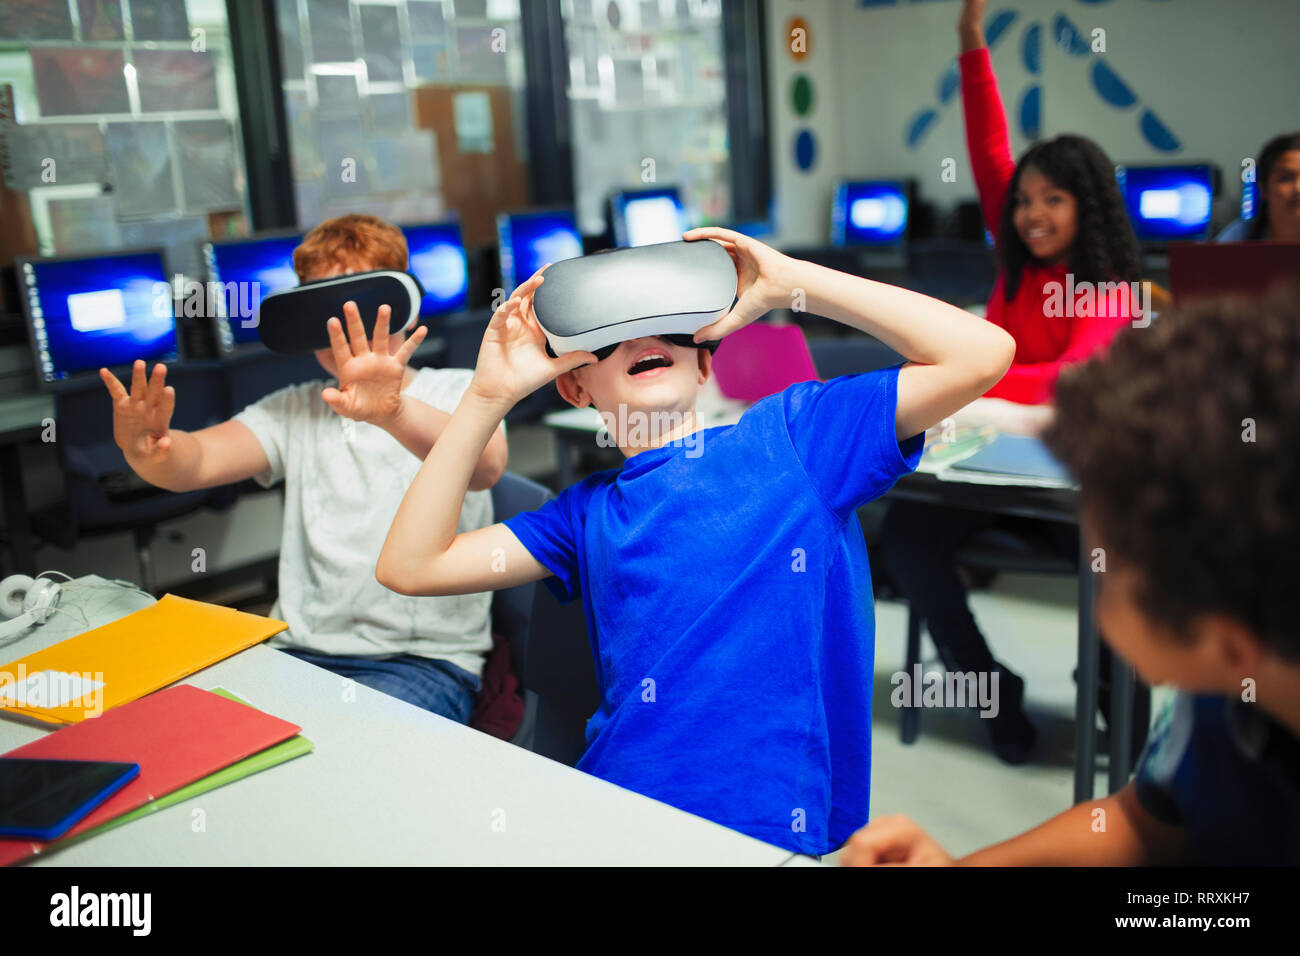 Junior High school boy simulateurs de réalité virtuelle à l'aide d'étudiants en classe Banque D'Images